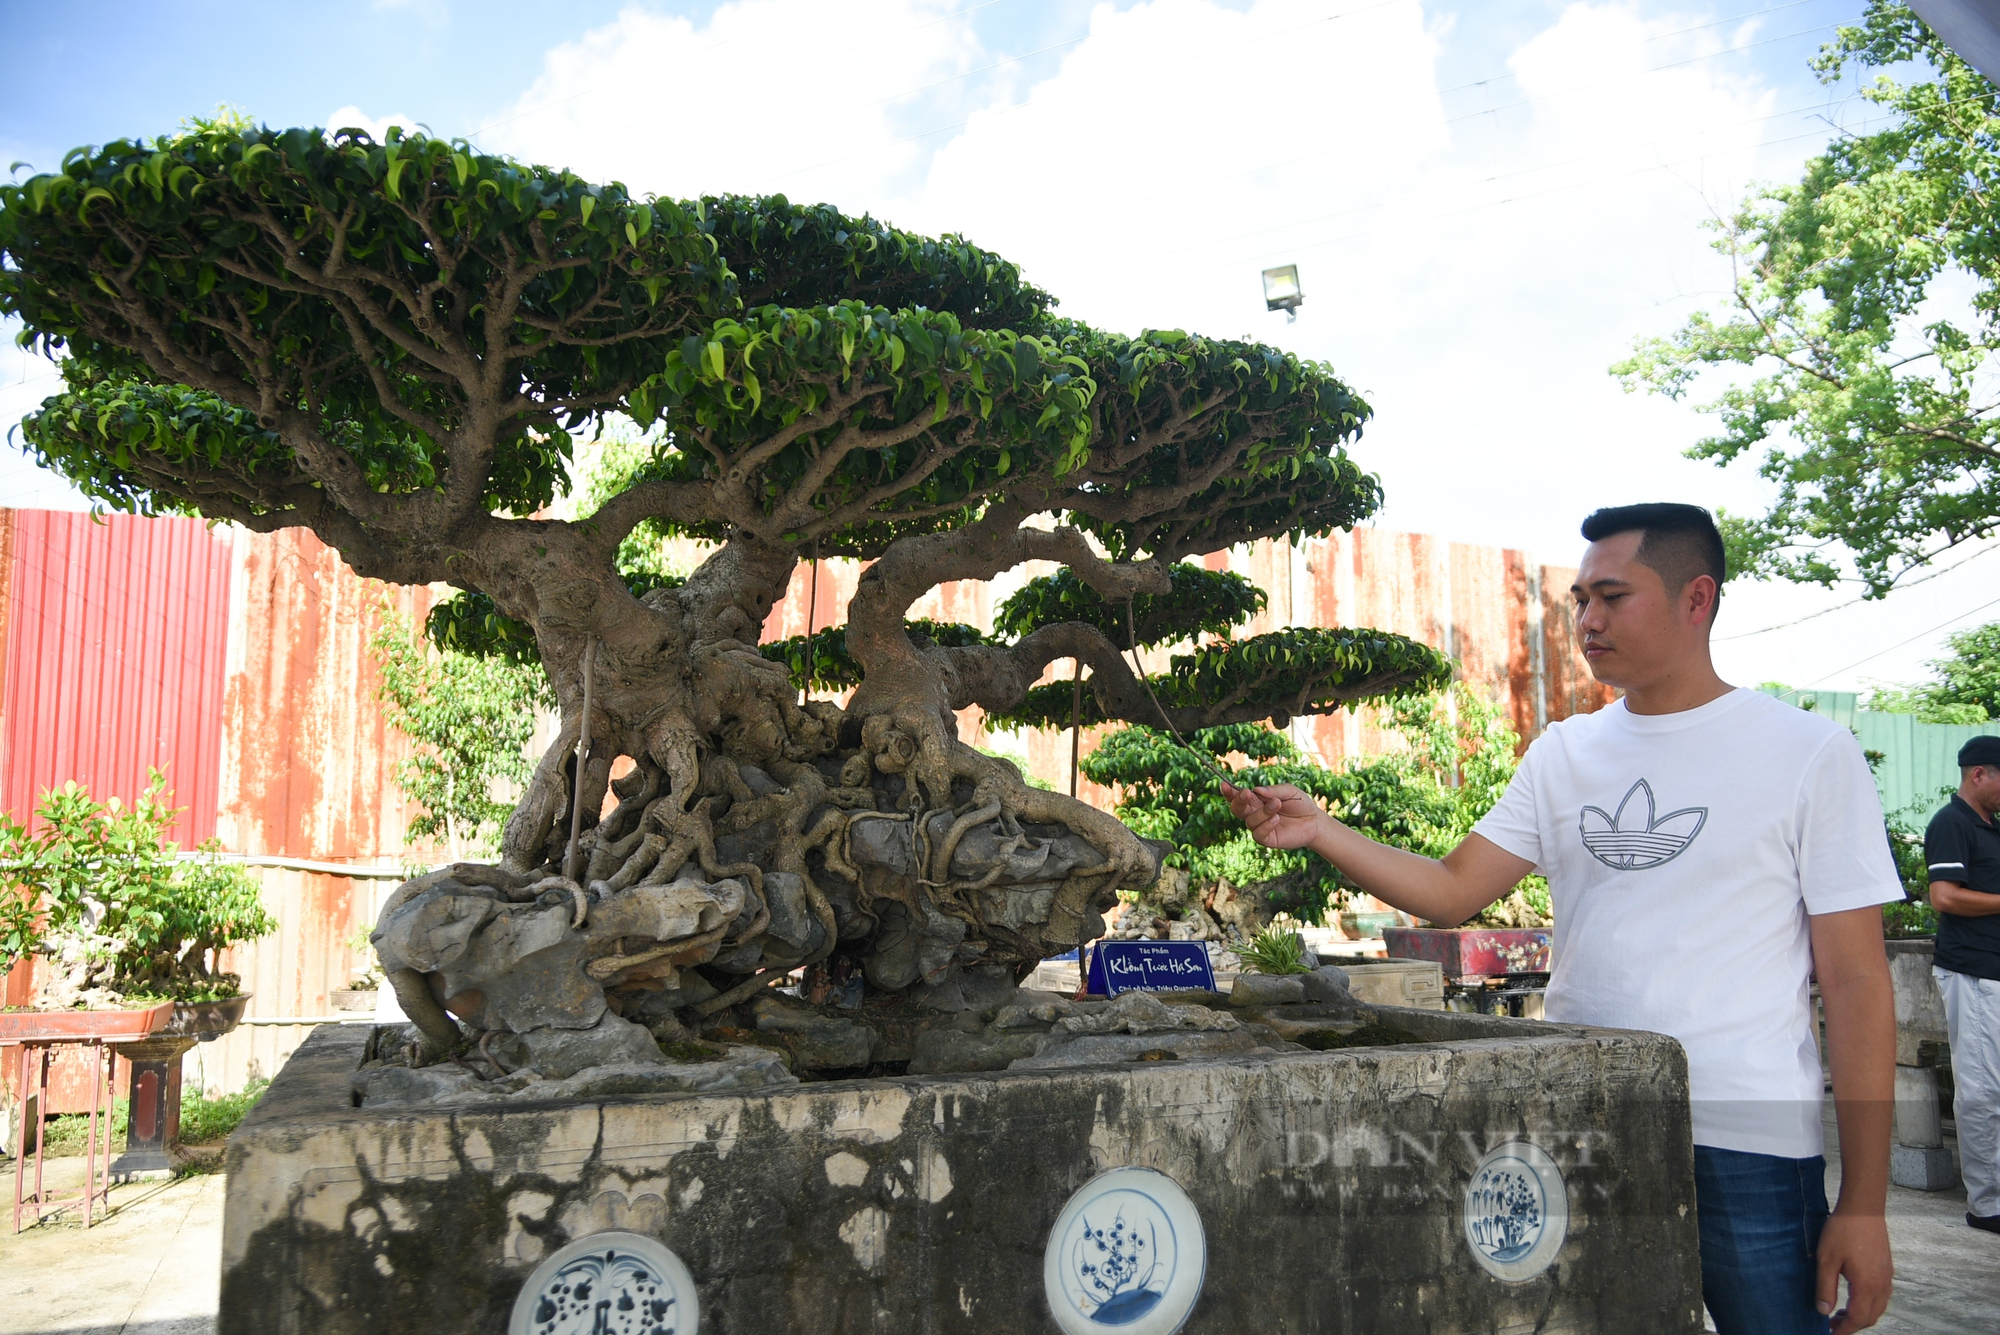 Chiêm ngưỡng cây cảnh “Khổng tước hạ sơn” trăm năm tuổi ở Hà Nội giá 3 triệu USD không bán - Ảnh 4.